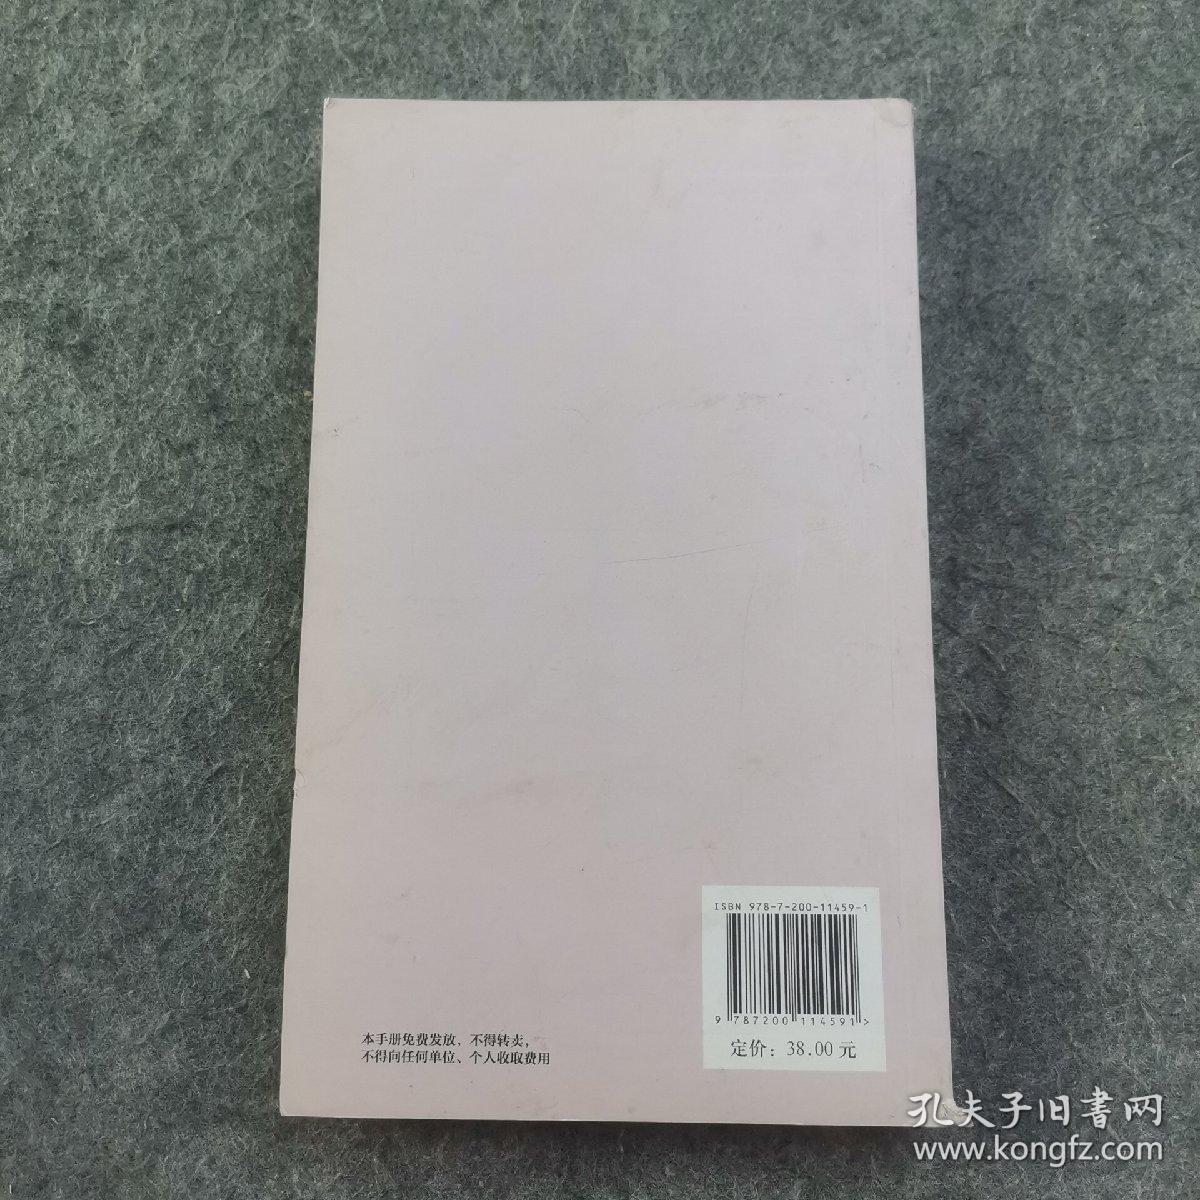 2015北京文化消费指南 一版一印